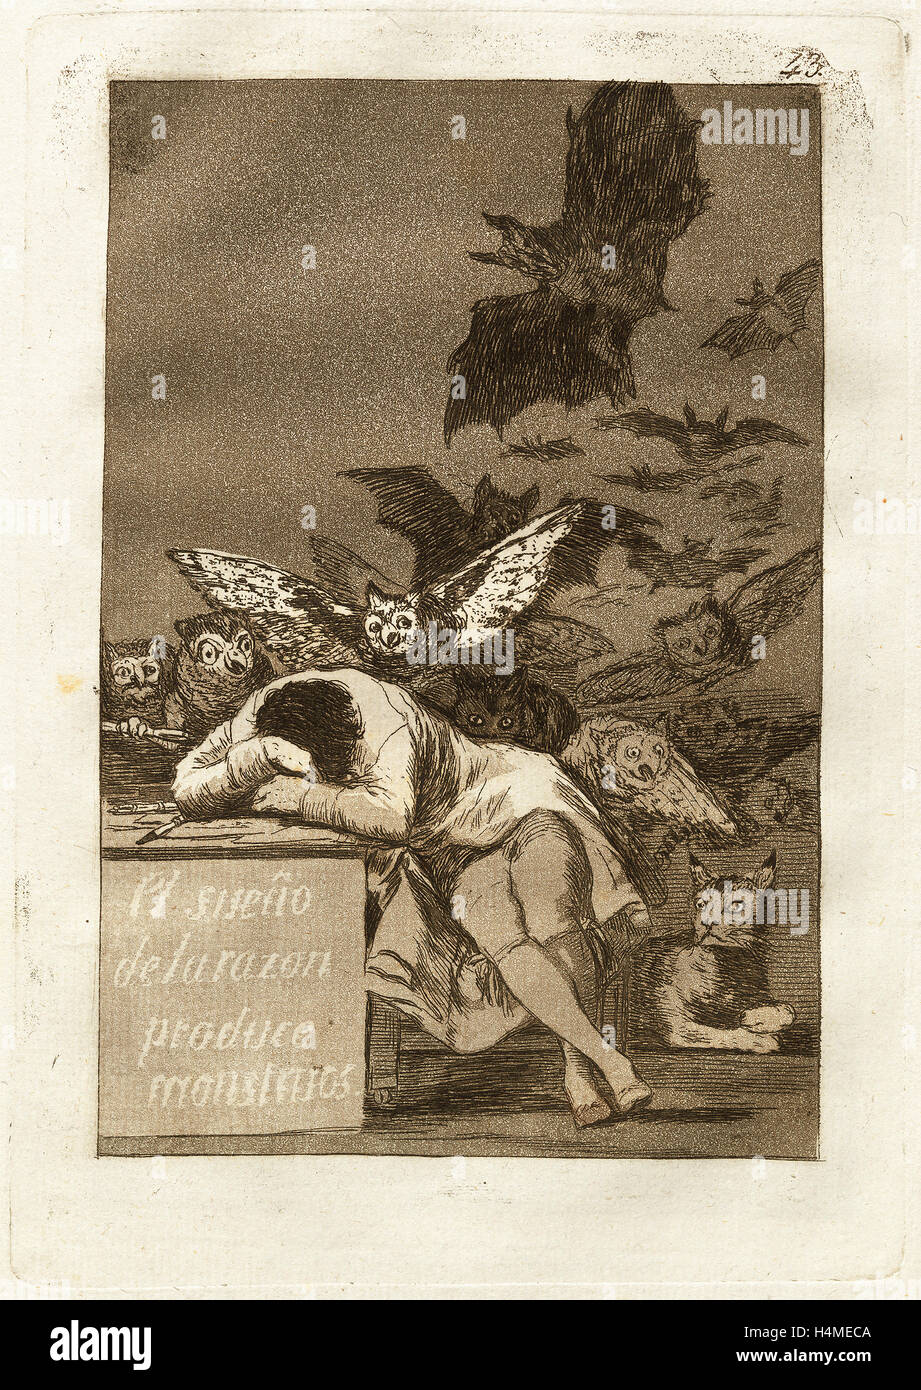 Francisco De Goya El Sueno De La Razon Produce Monstruos The Sleep Of Reason Produces Monsters